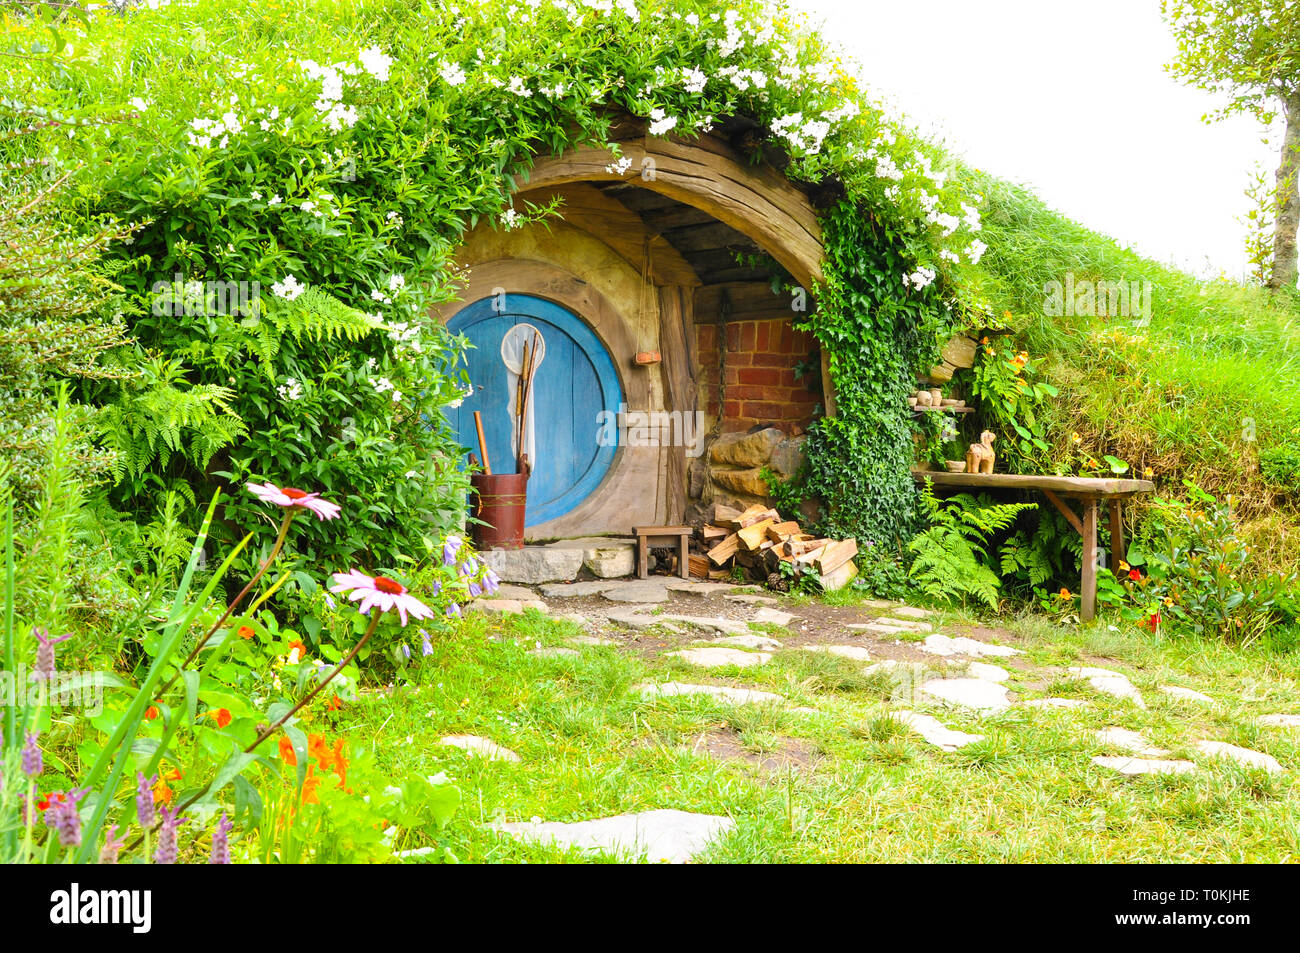 Hobbiton Movie "set-location" für Der Herr der Ringe und der Hobbit Filme. Hobbit Bohrung Haus. Sehenswürdigkeit in der Region Waikato in Neuseeland Stockfoto